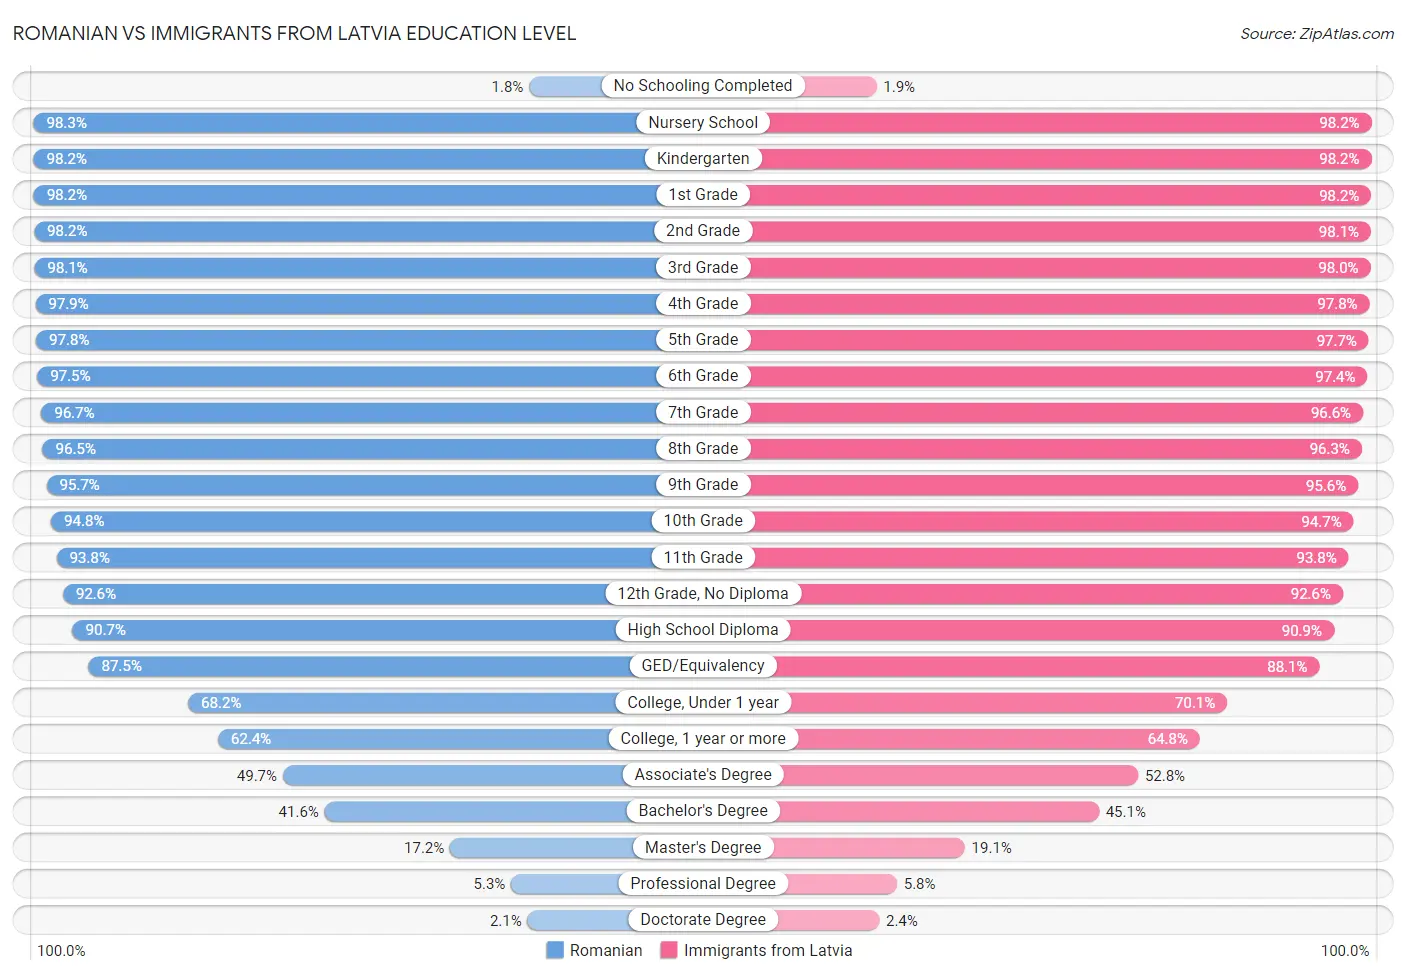 Romanian vs Immigrants from Latvia Education Level